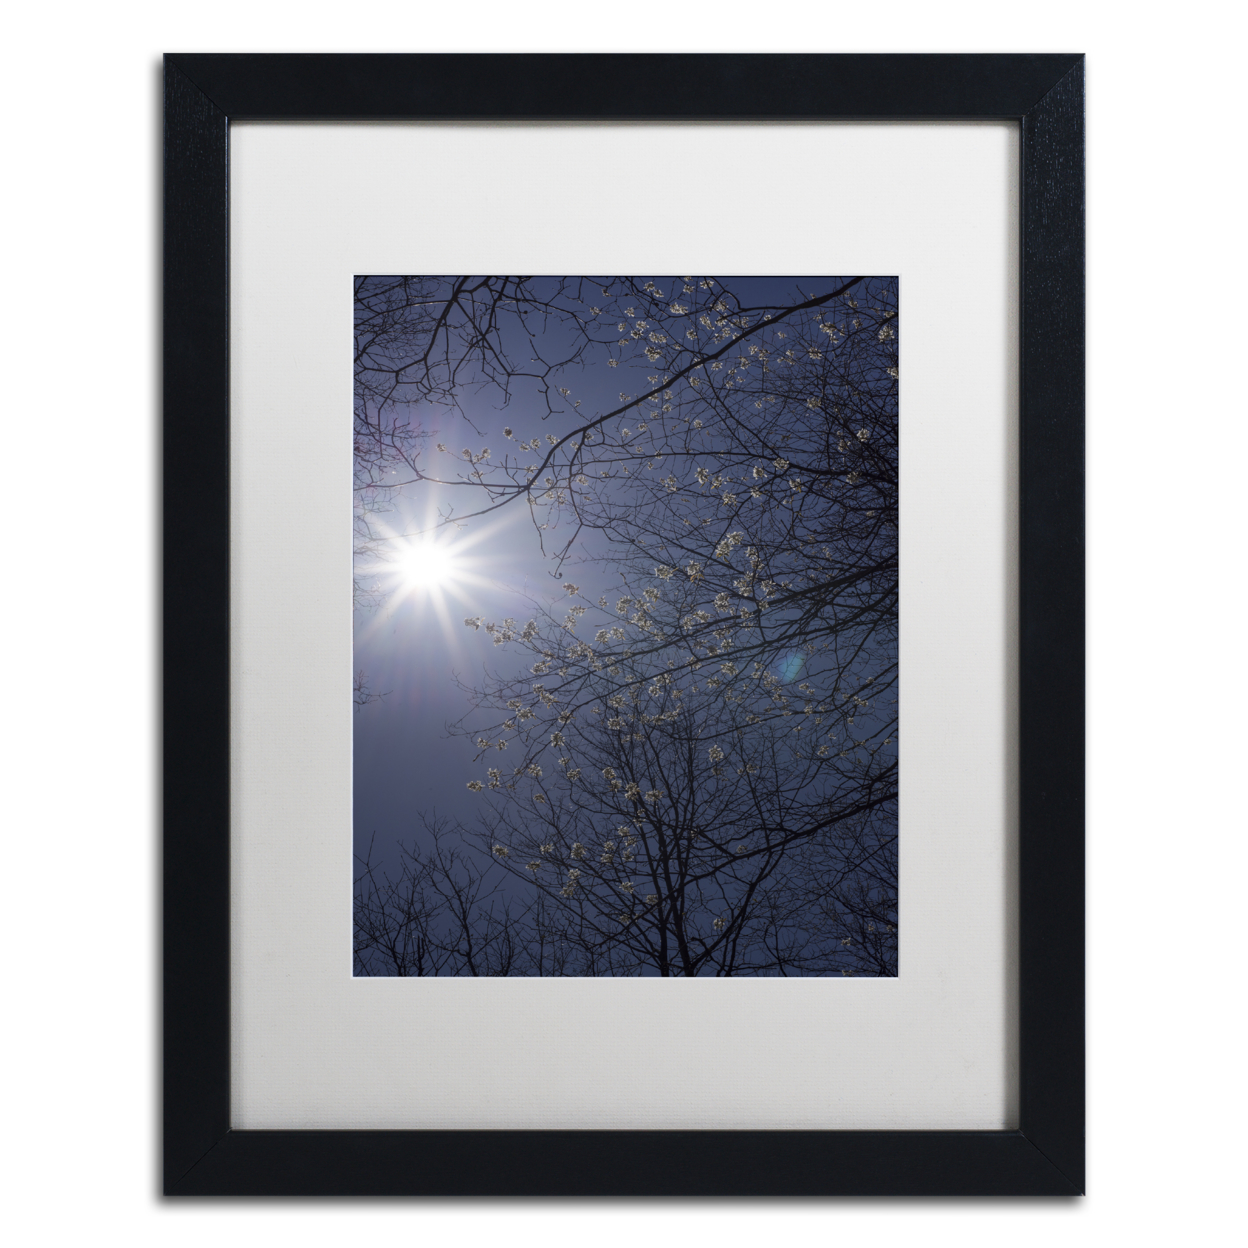 Kurt Shaffer 'Springtime Sunshine' Black Wooden Framed Art 18 X 22 Inches